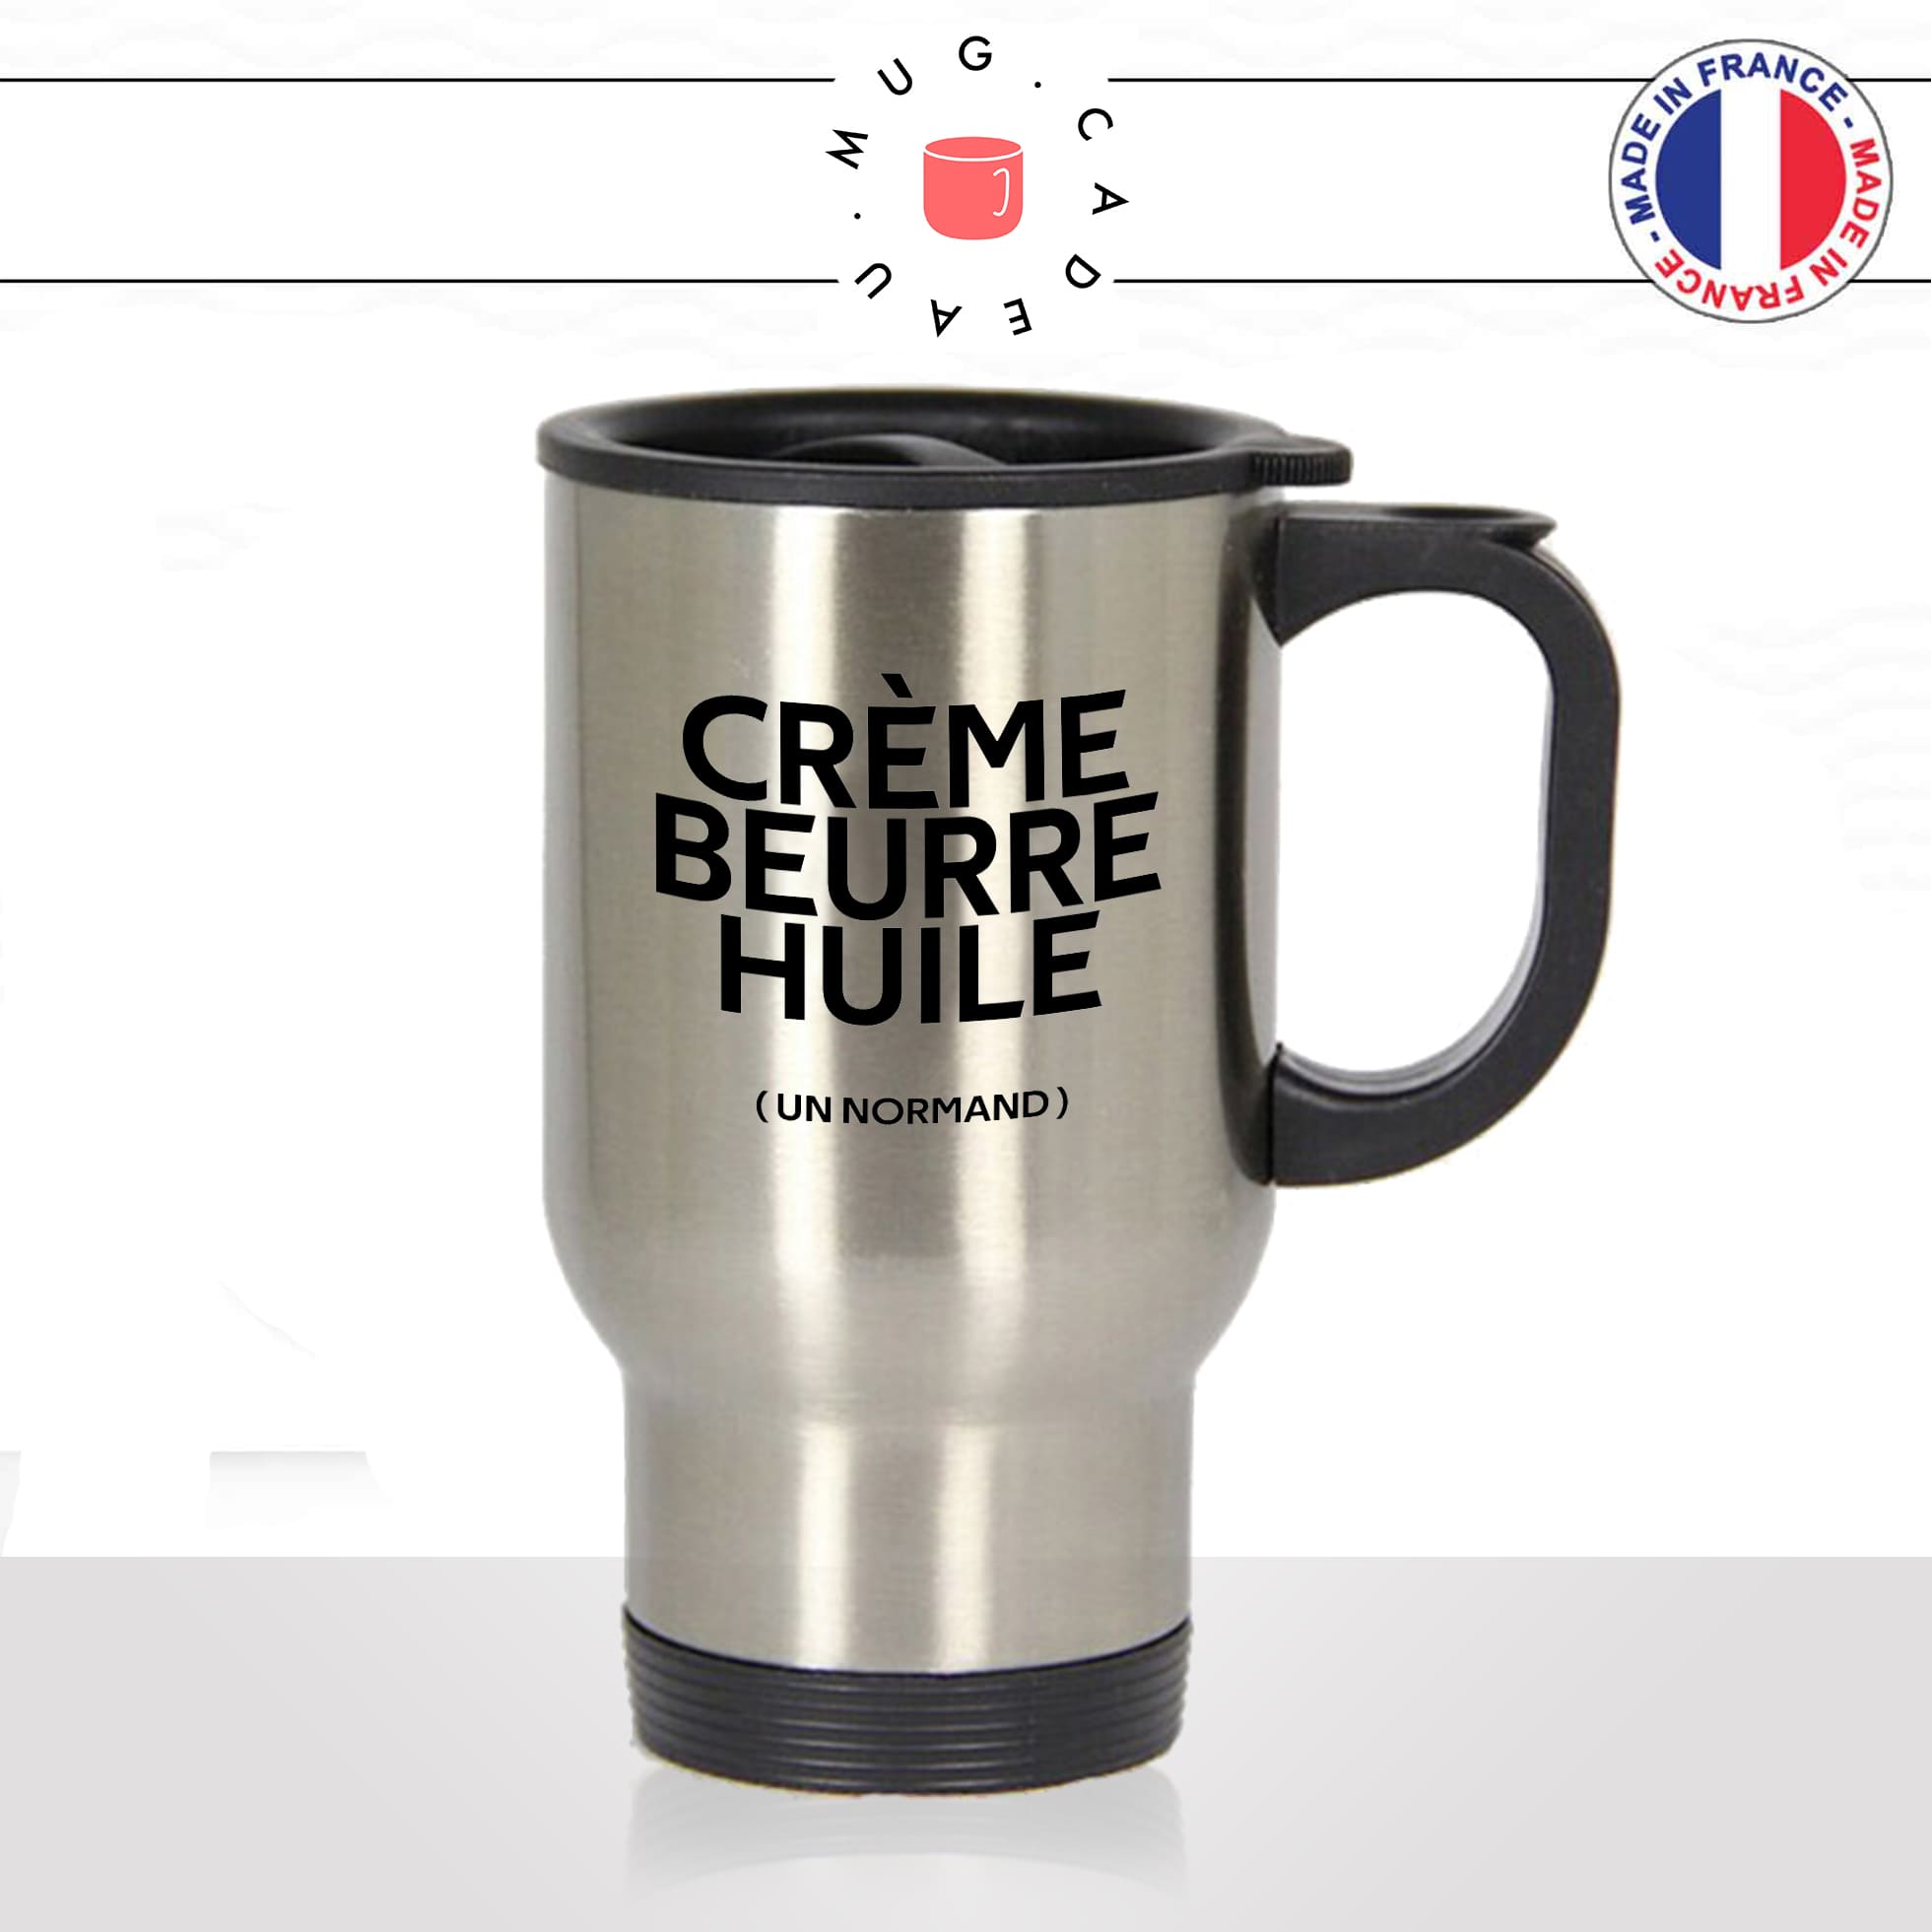 mug-tasse-thermos-isotherme-voyage-creme-beurre-huile-gras-un-normand-normandie-cuisine-humour-fun-idée-cadeau-originale-cool2